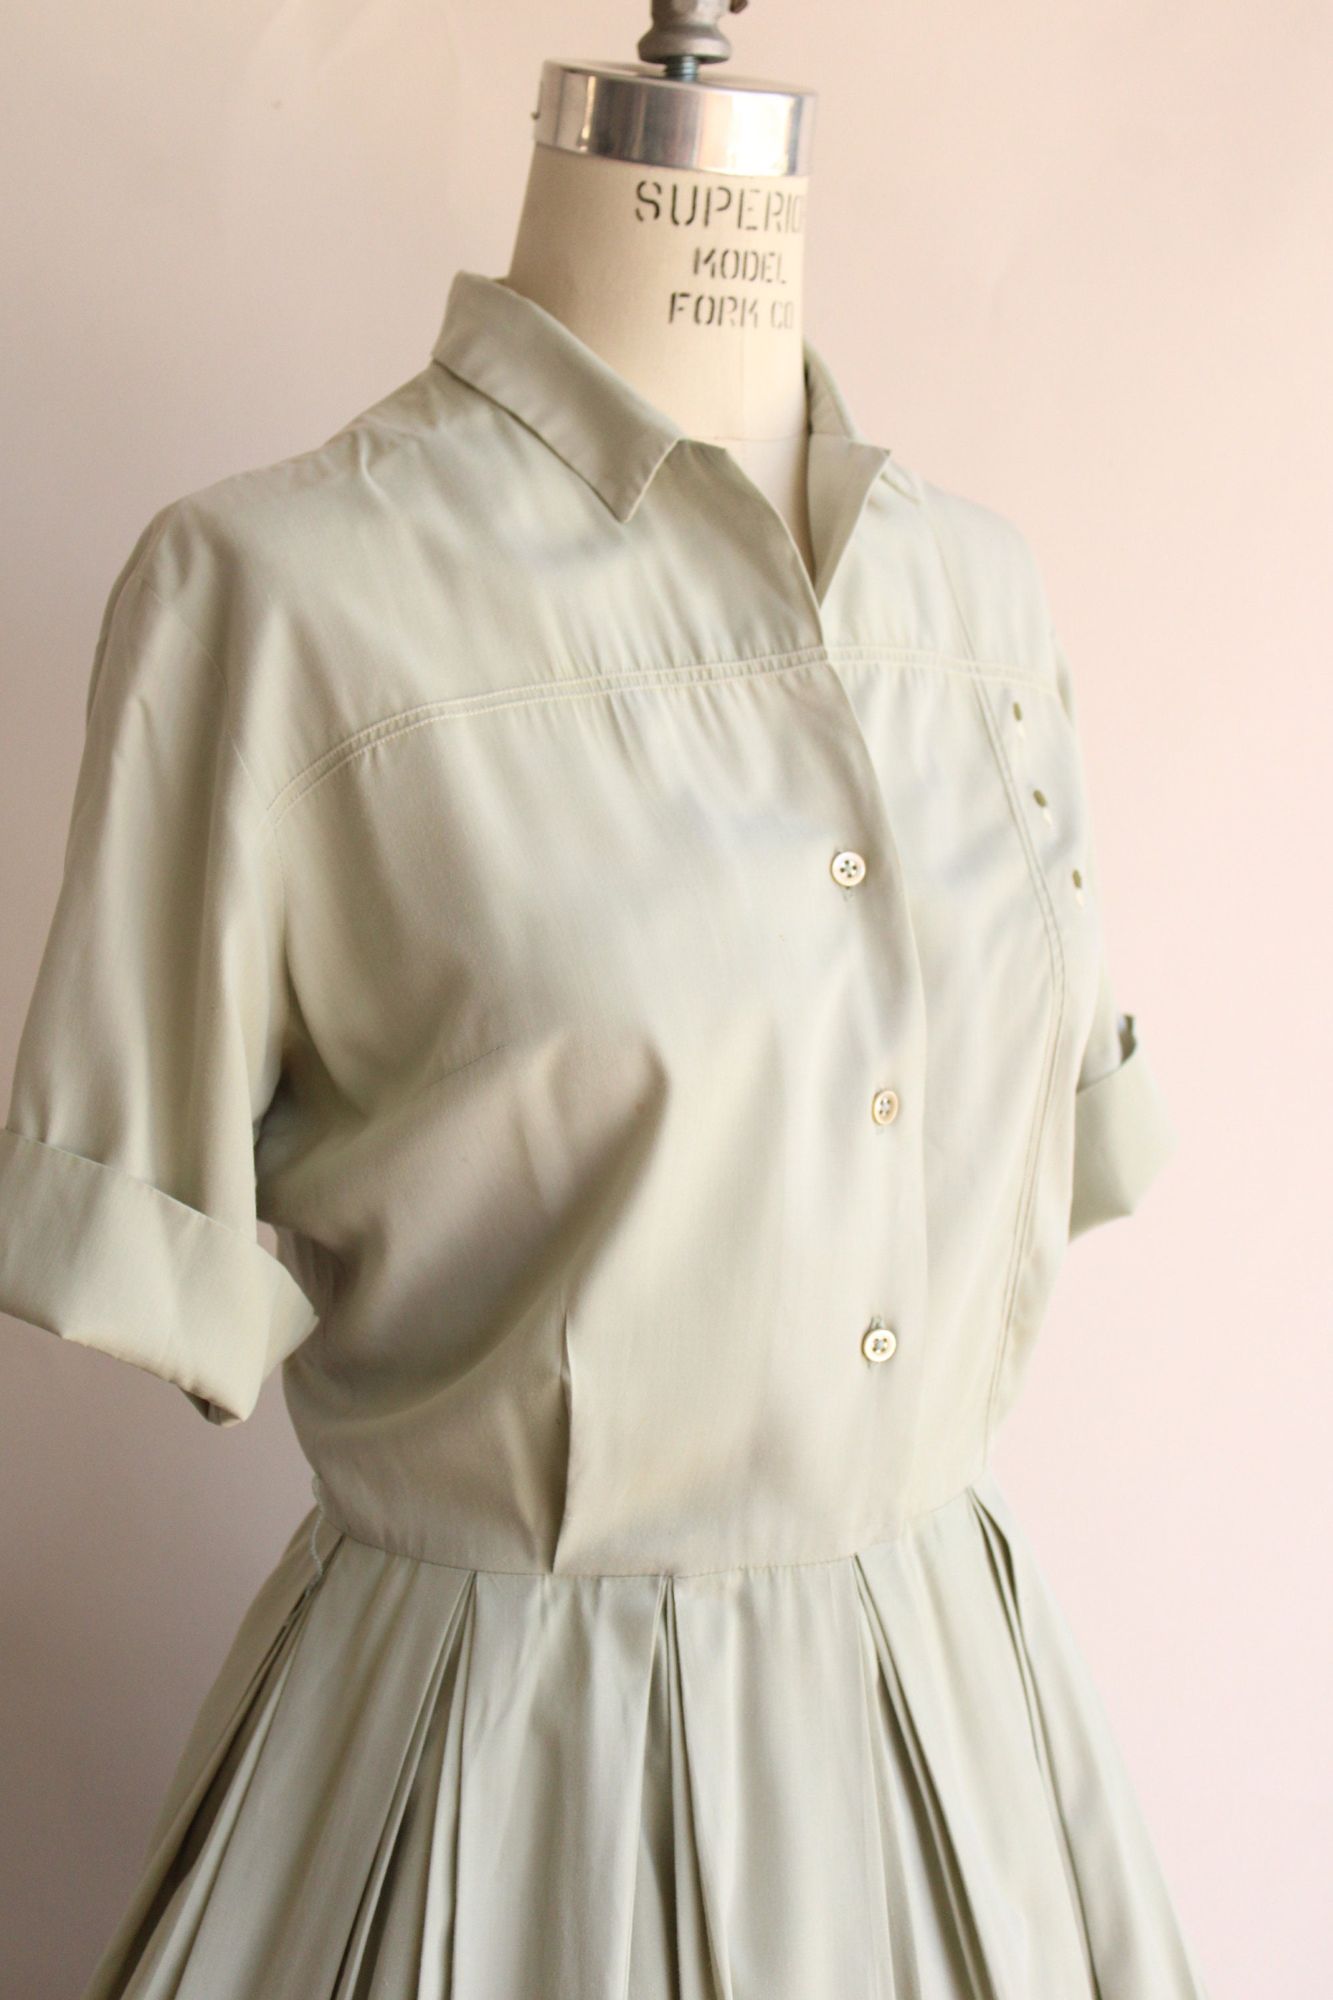 Vintage 1950s Green Shirtwaist Dress with Belt